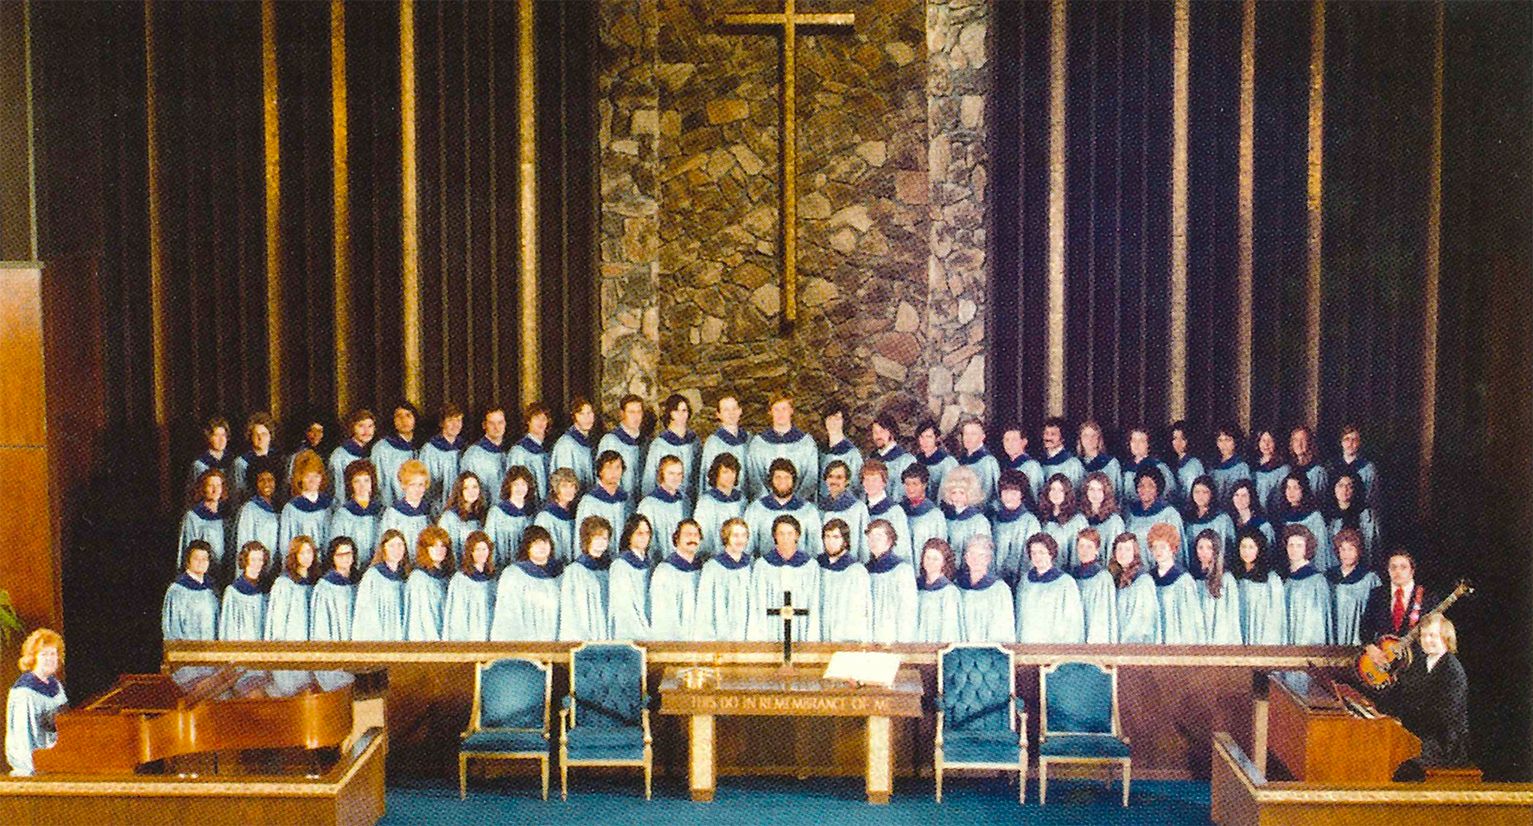 Nancy's first choir